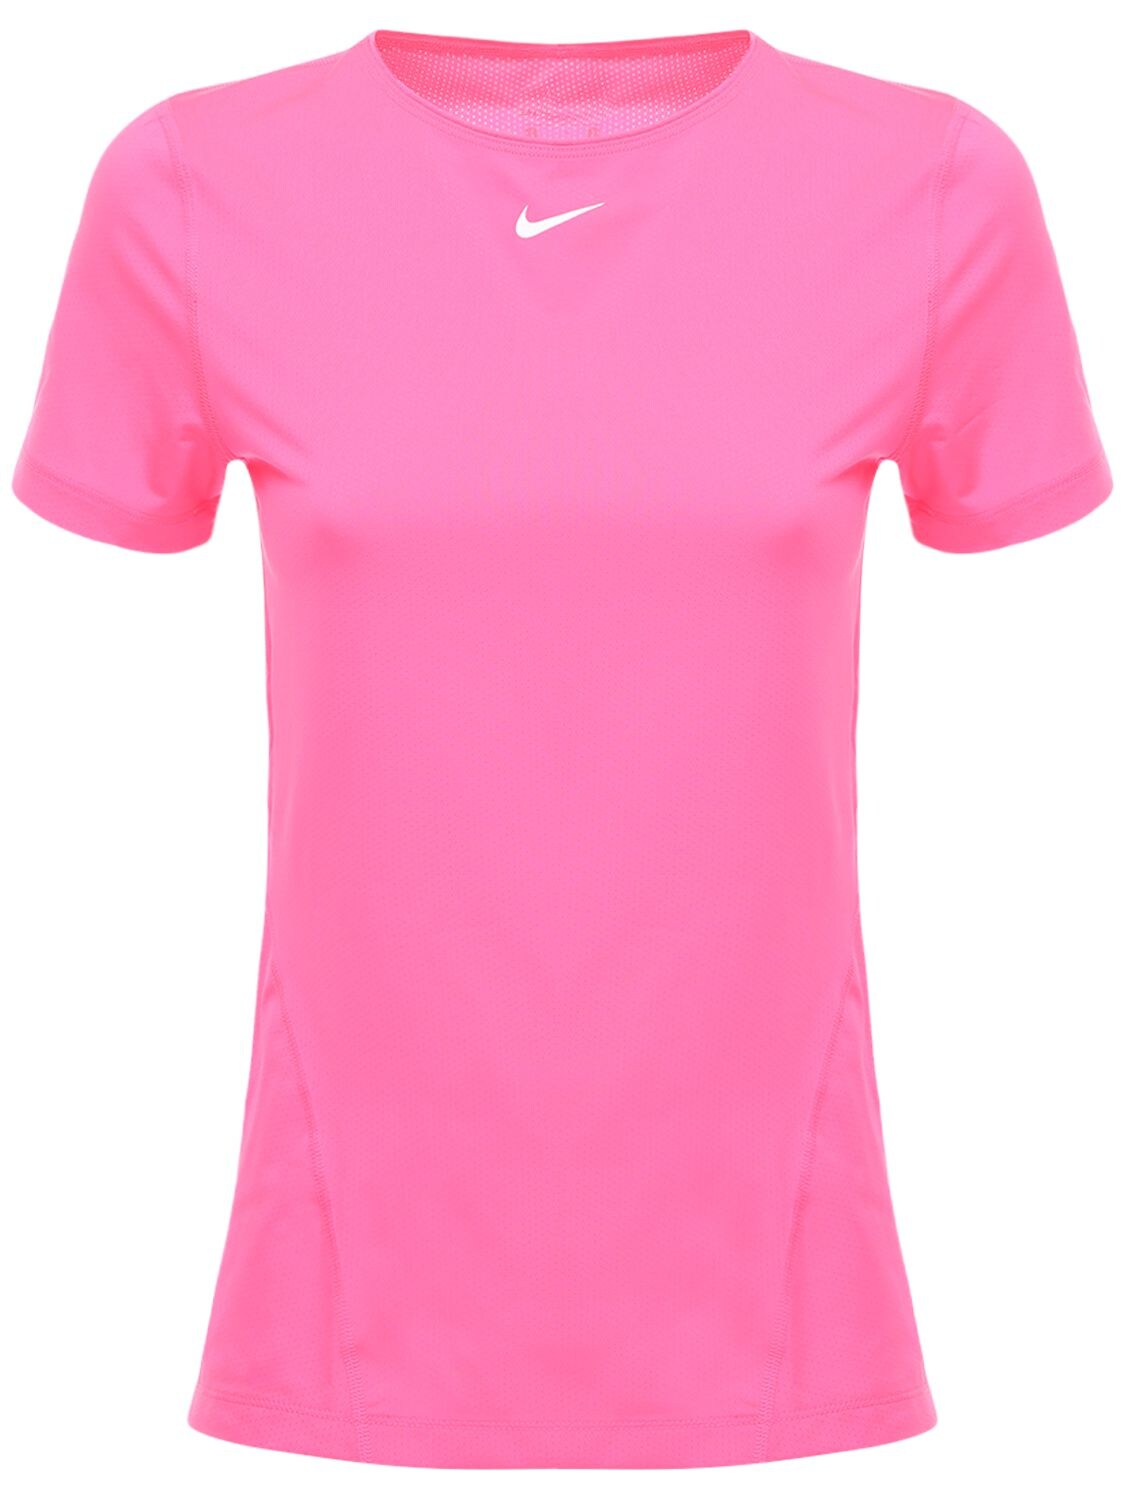 Nike “ Pro Tech Training”t恤 In Hyper Pink